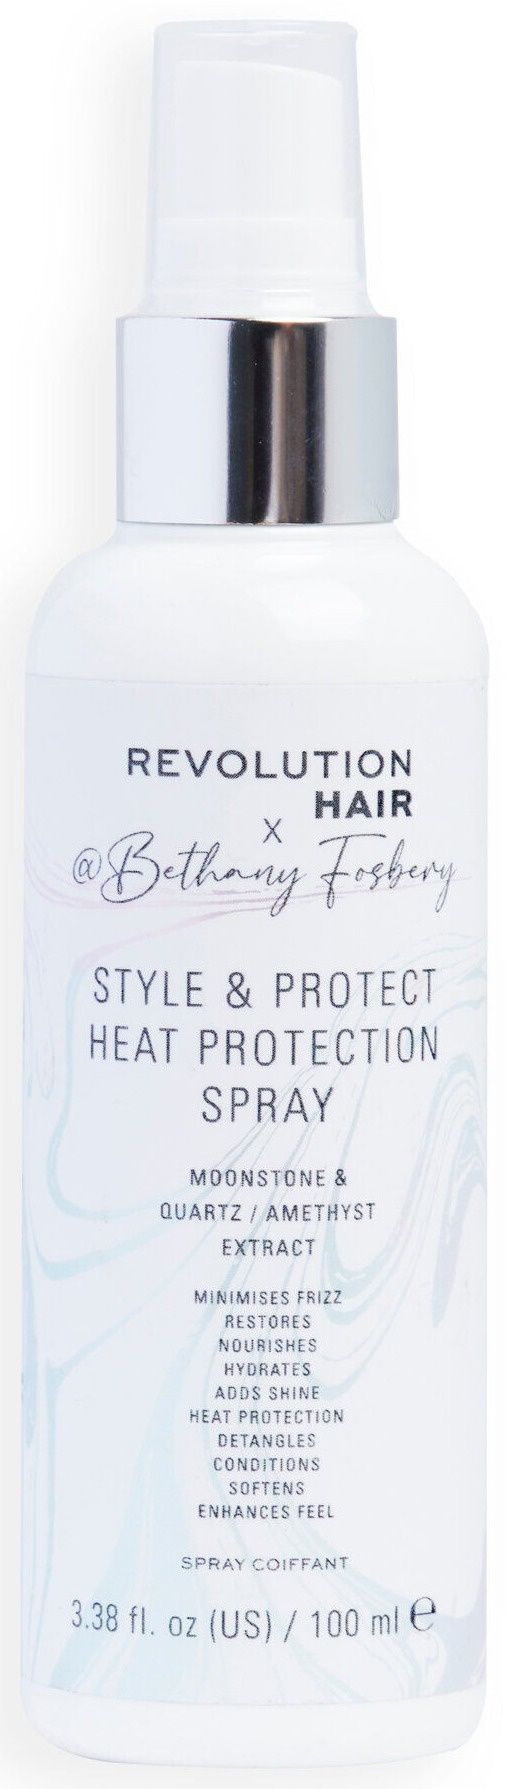 Revolution Hair x Bethany Fosbery Style & Protect Heat Protection Spray